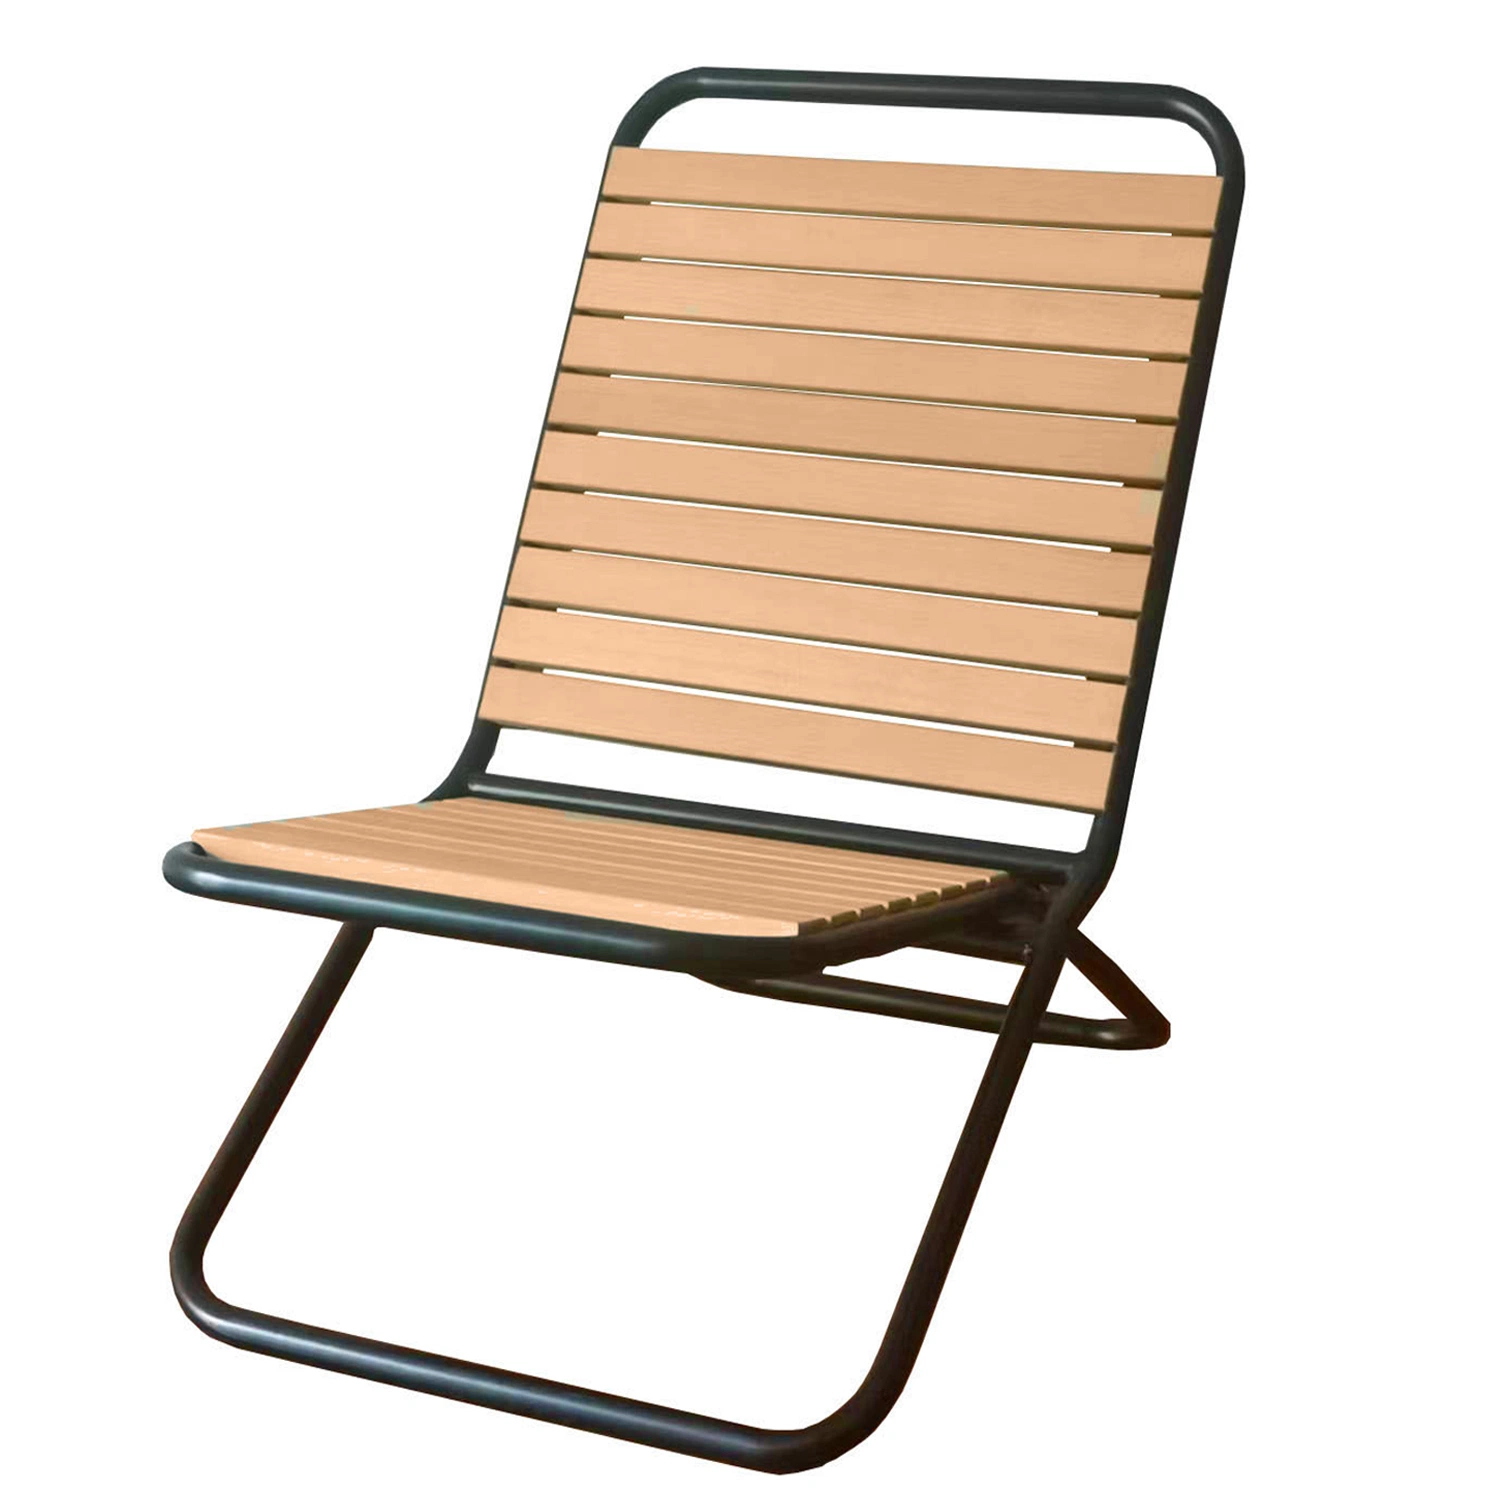 Estilo moderno al aire libre Beach Folding Chair Marco metálico listones de madera Chaise Lounge